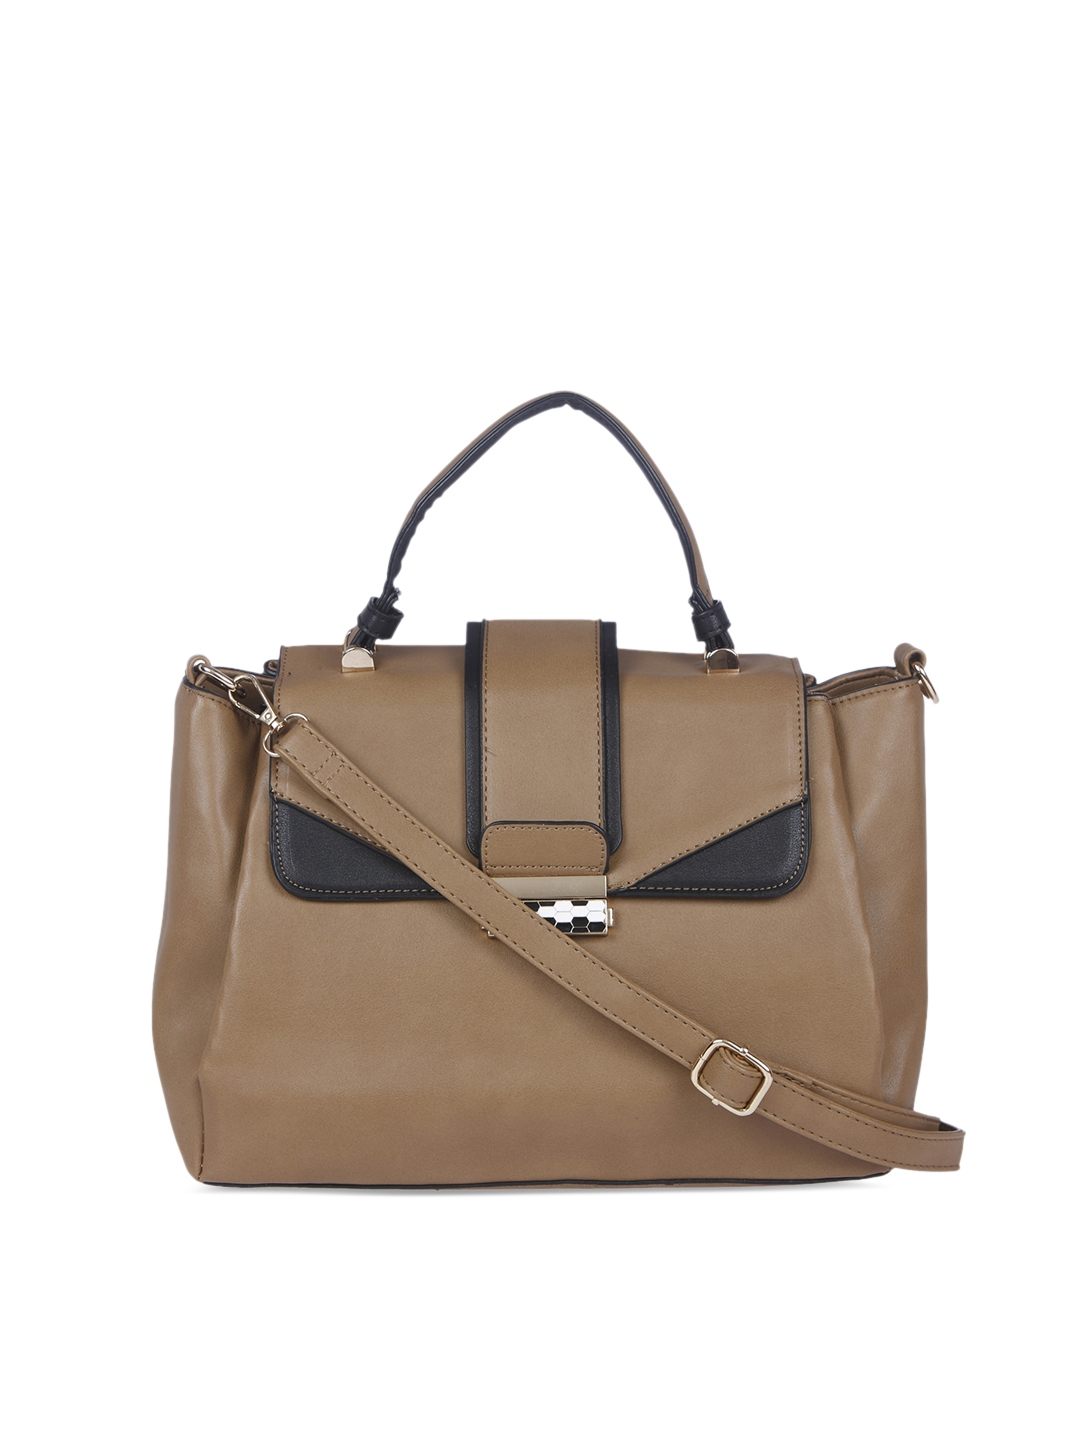 Buy FUR JADEN Brown Satchel Bag - Handbags for Women 2144255 | Myntra